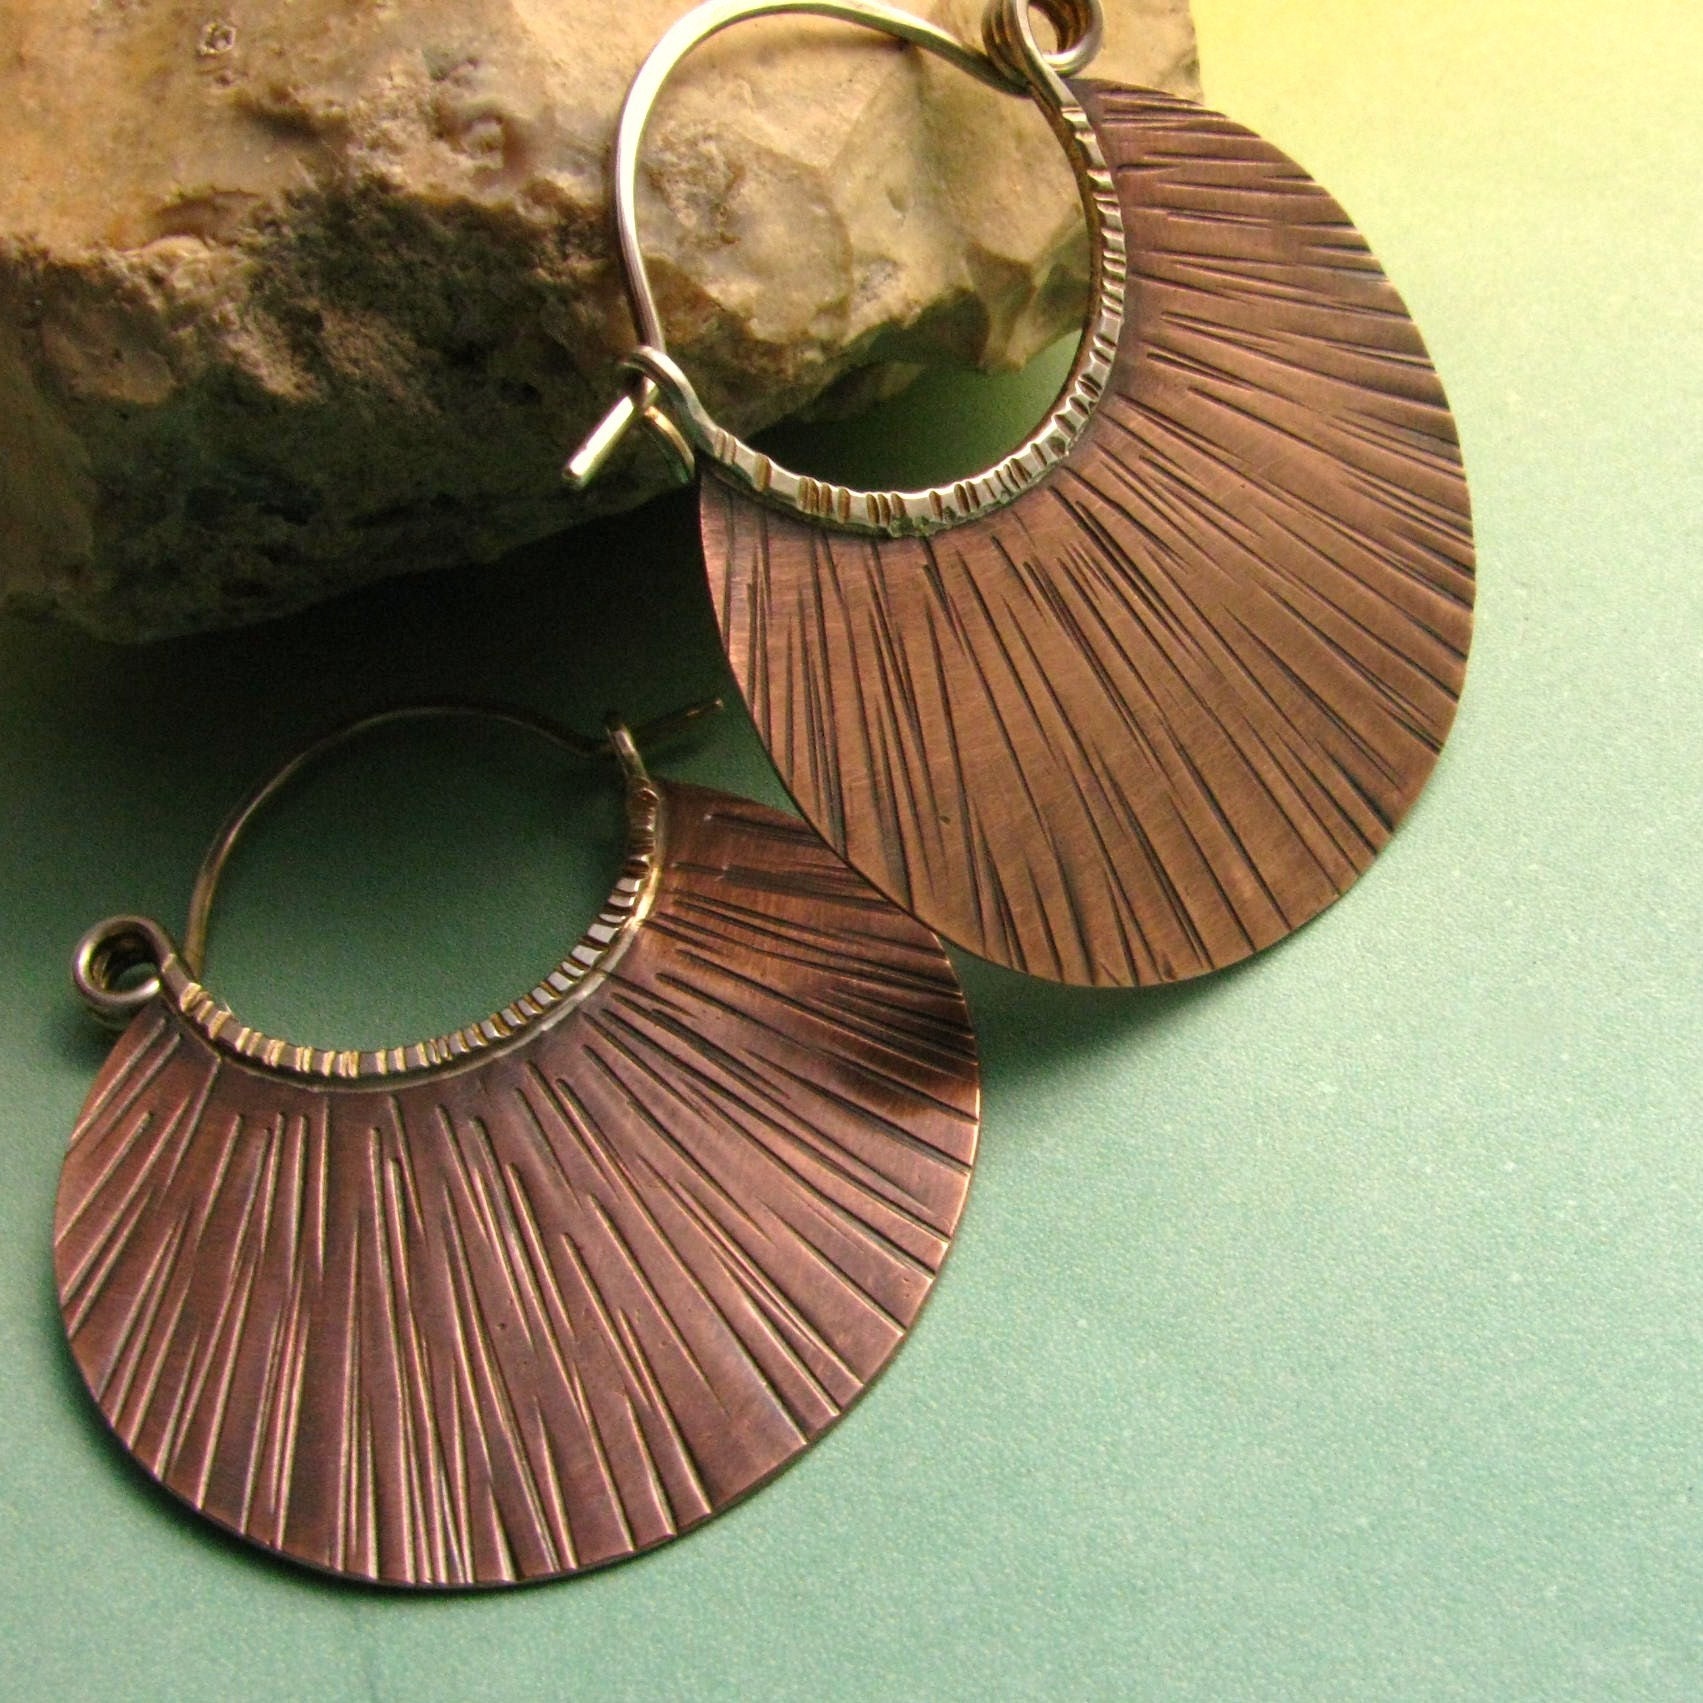 Metalwork Copper Hoop Earrings Mixed Metal Jewelry by Mocahete